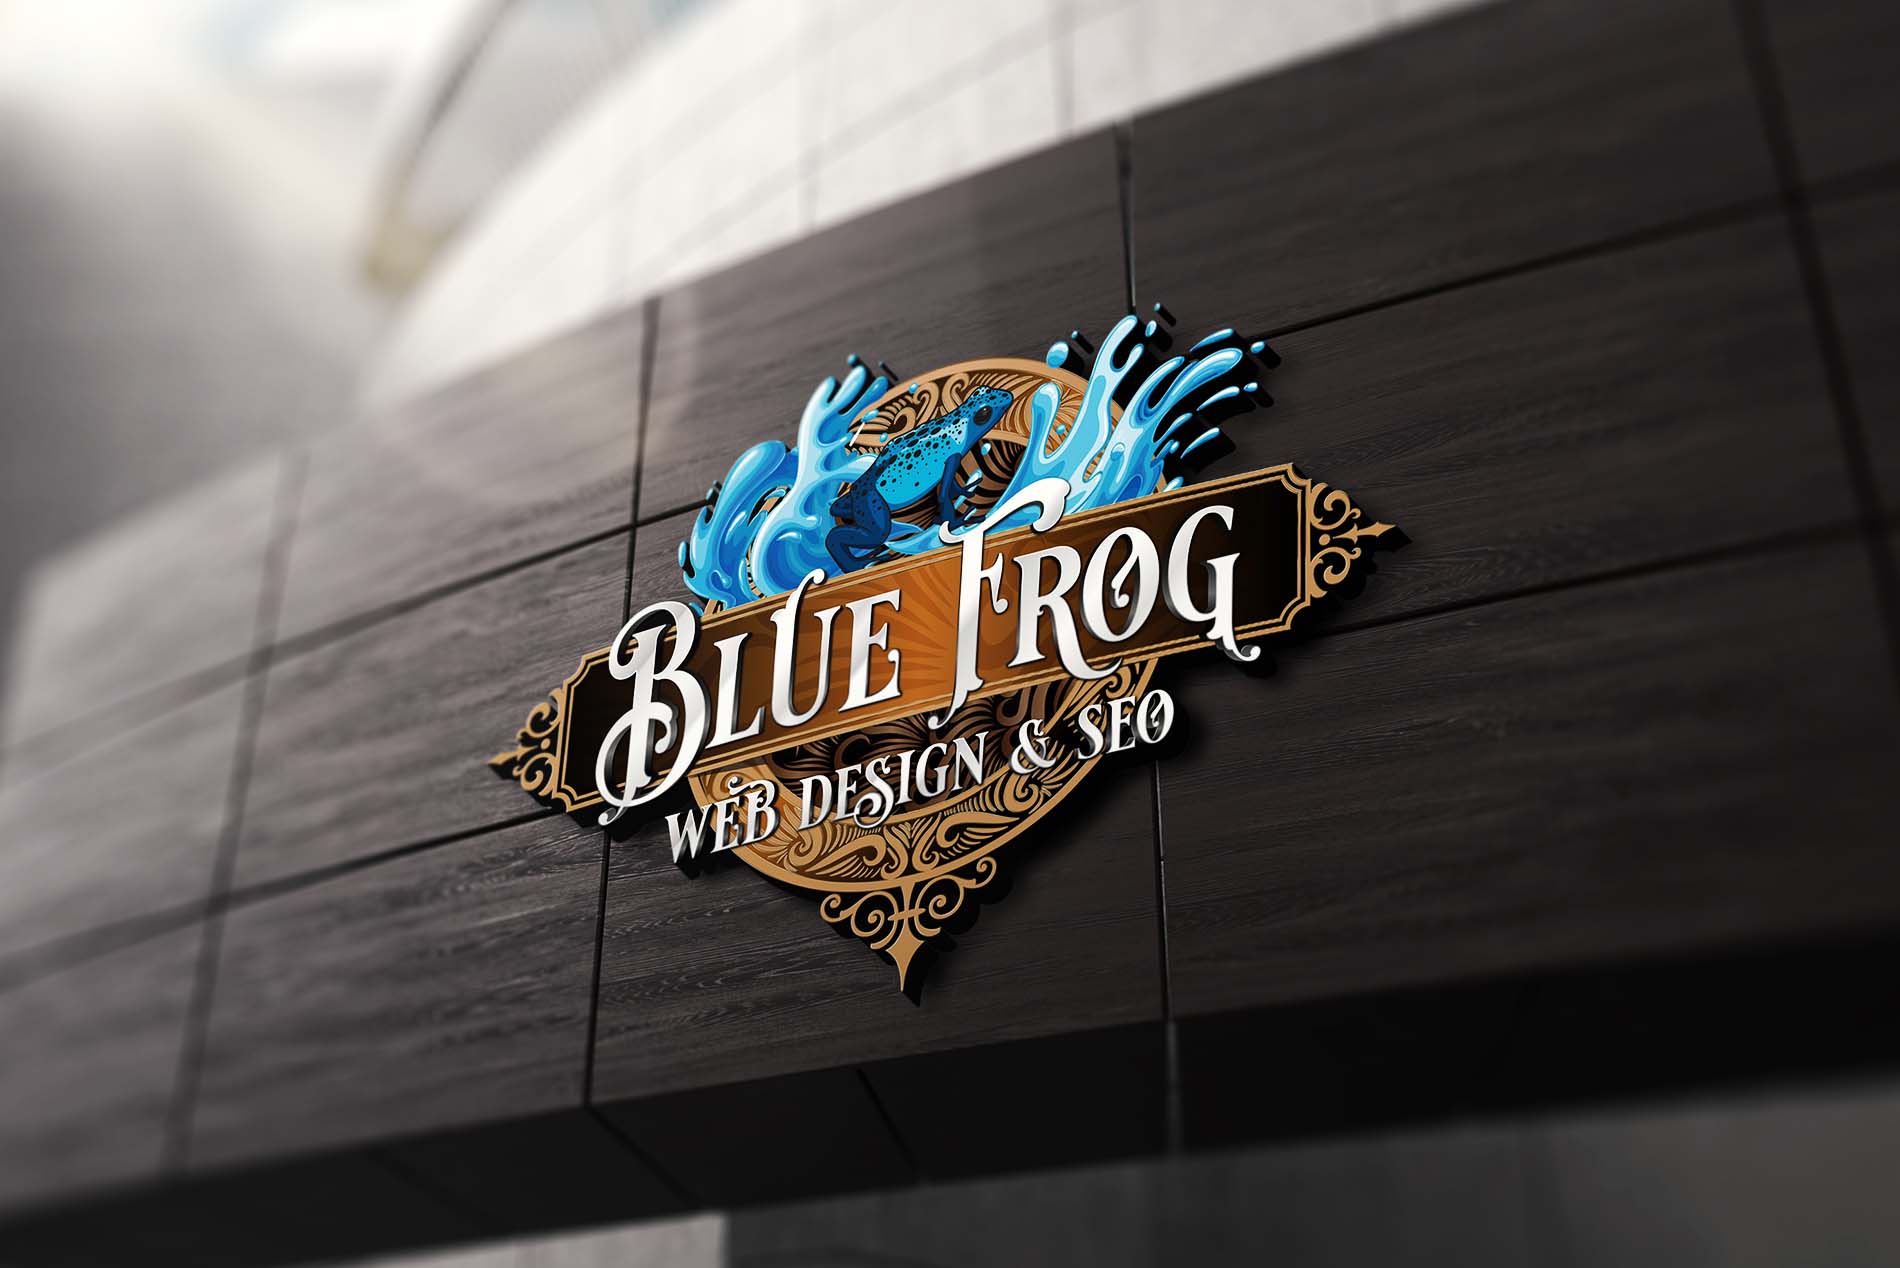 Website Design Agency in El Dorado Hills, CA. Blue Frog Web Design & SEO